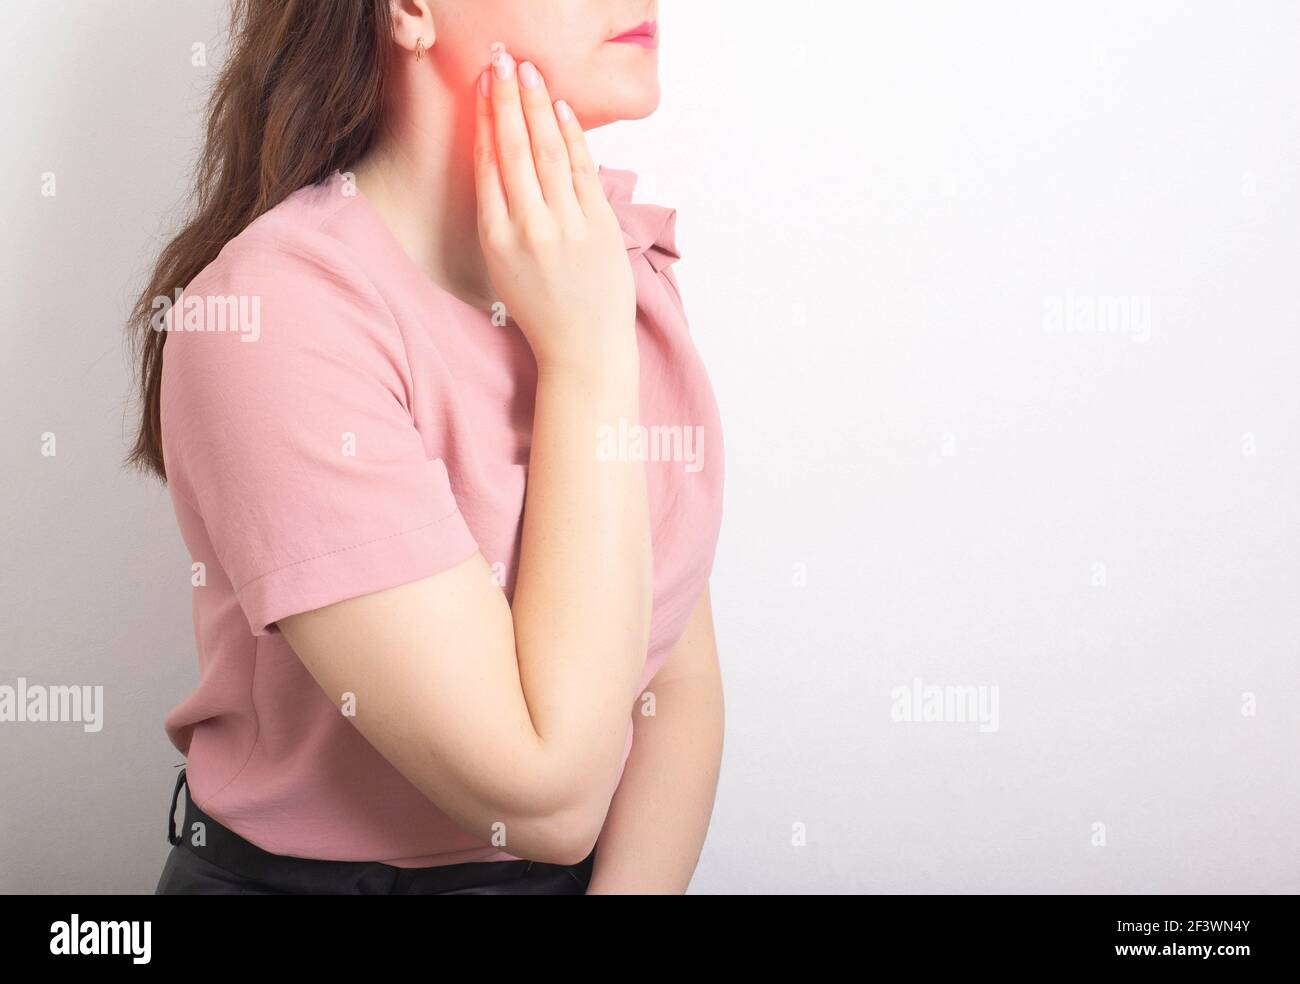 Une fille brune tient avec sa main la mâchoire d'une dent de sagesse malade avec un kyste. Concept de maladie dentaire en dentisterie, inflammation des gencives, copier l'espace pour Banque D'Images